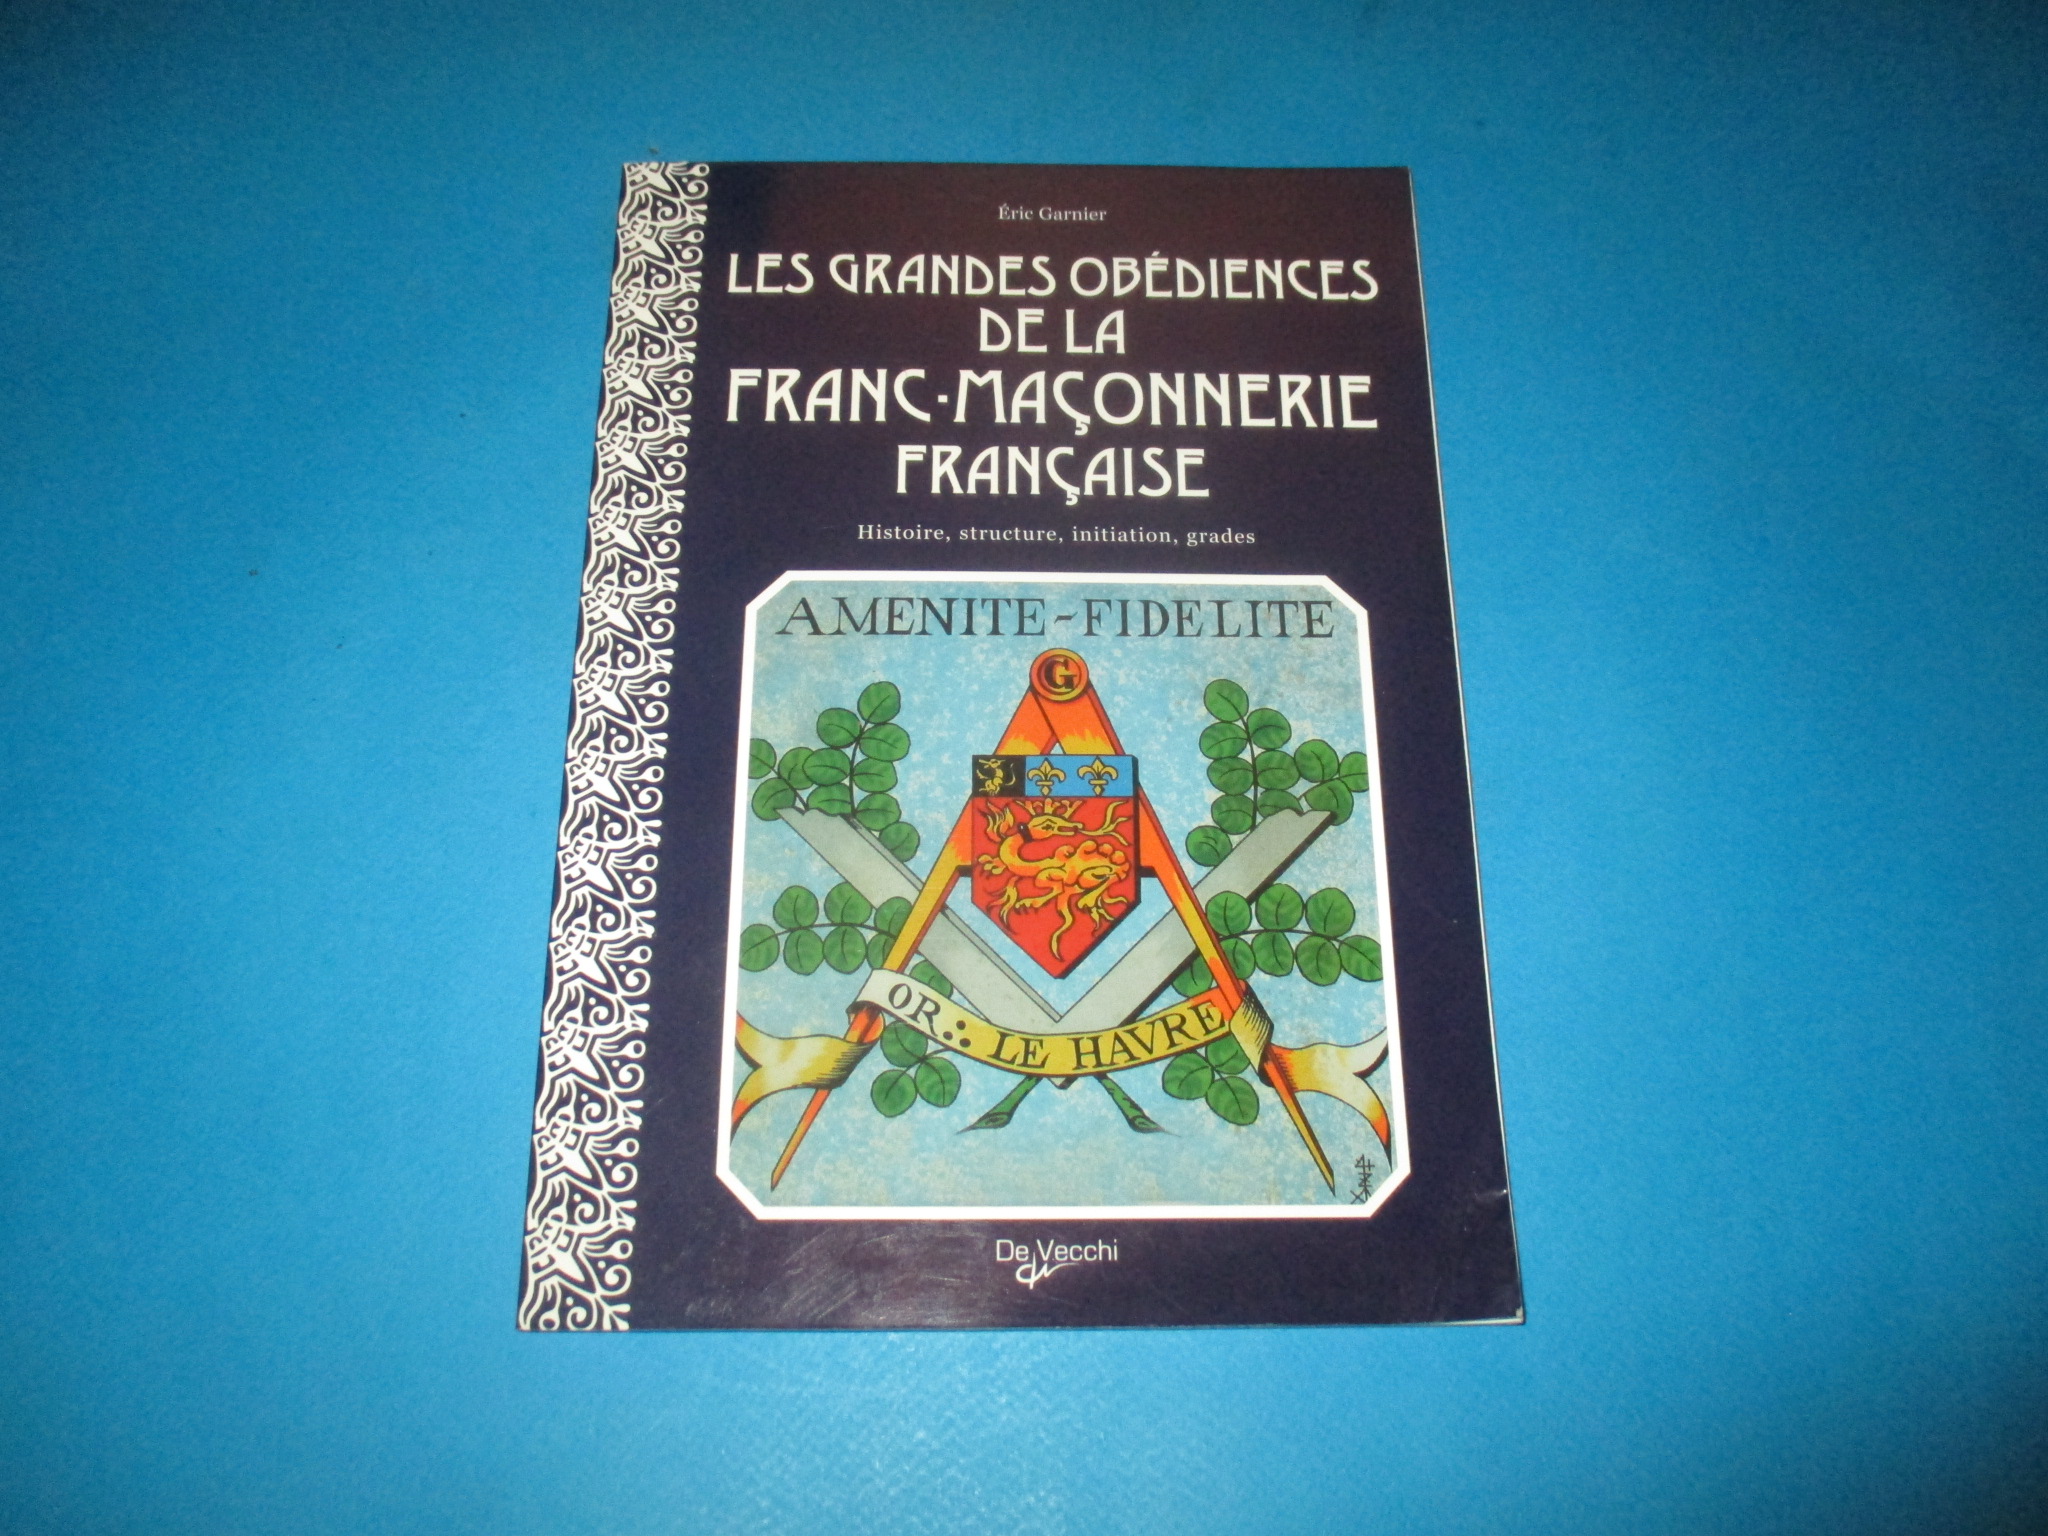 Les Grandes Obédiences de la Franc-Maçonnerie française, histoire structure initiation grades, Eric Garnier, De Vecchi